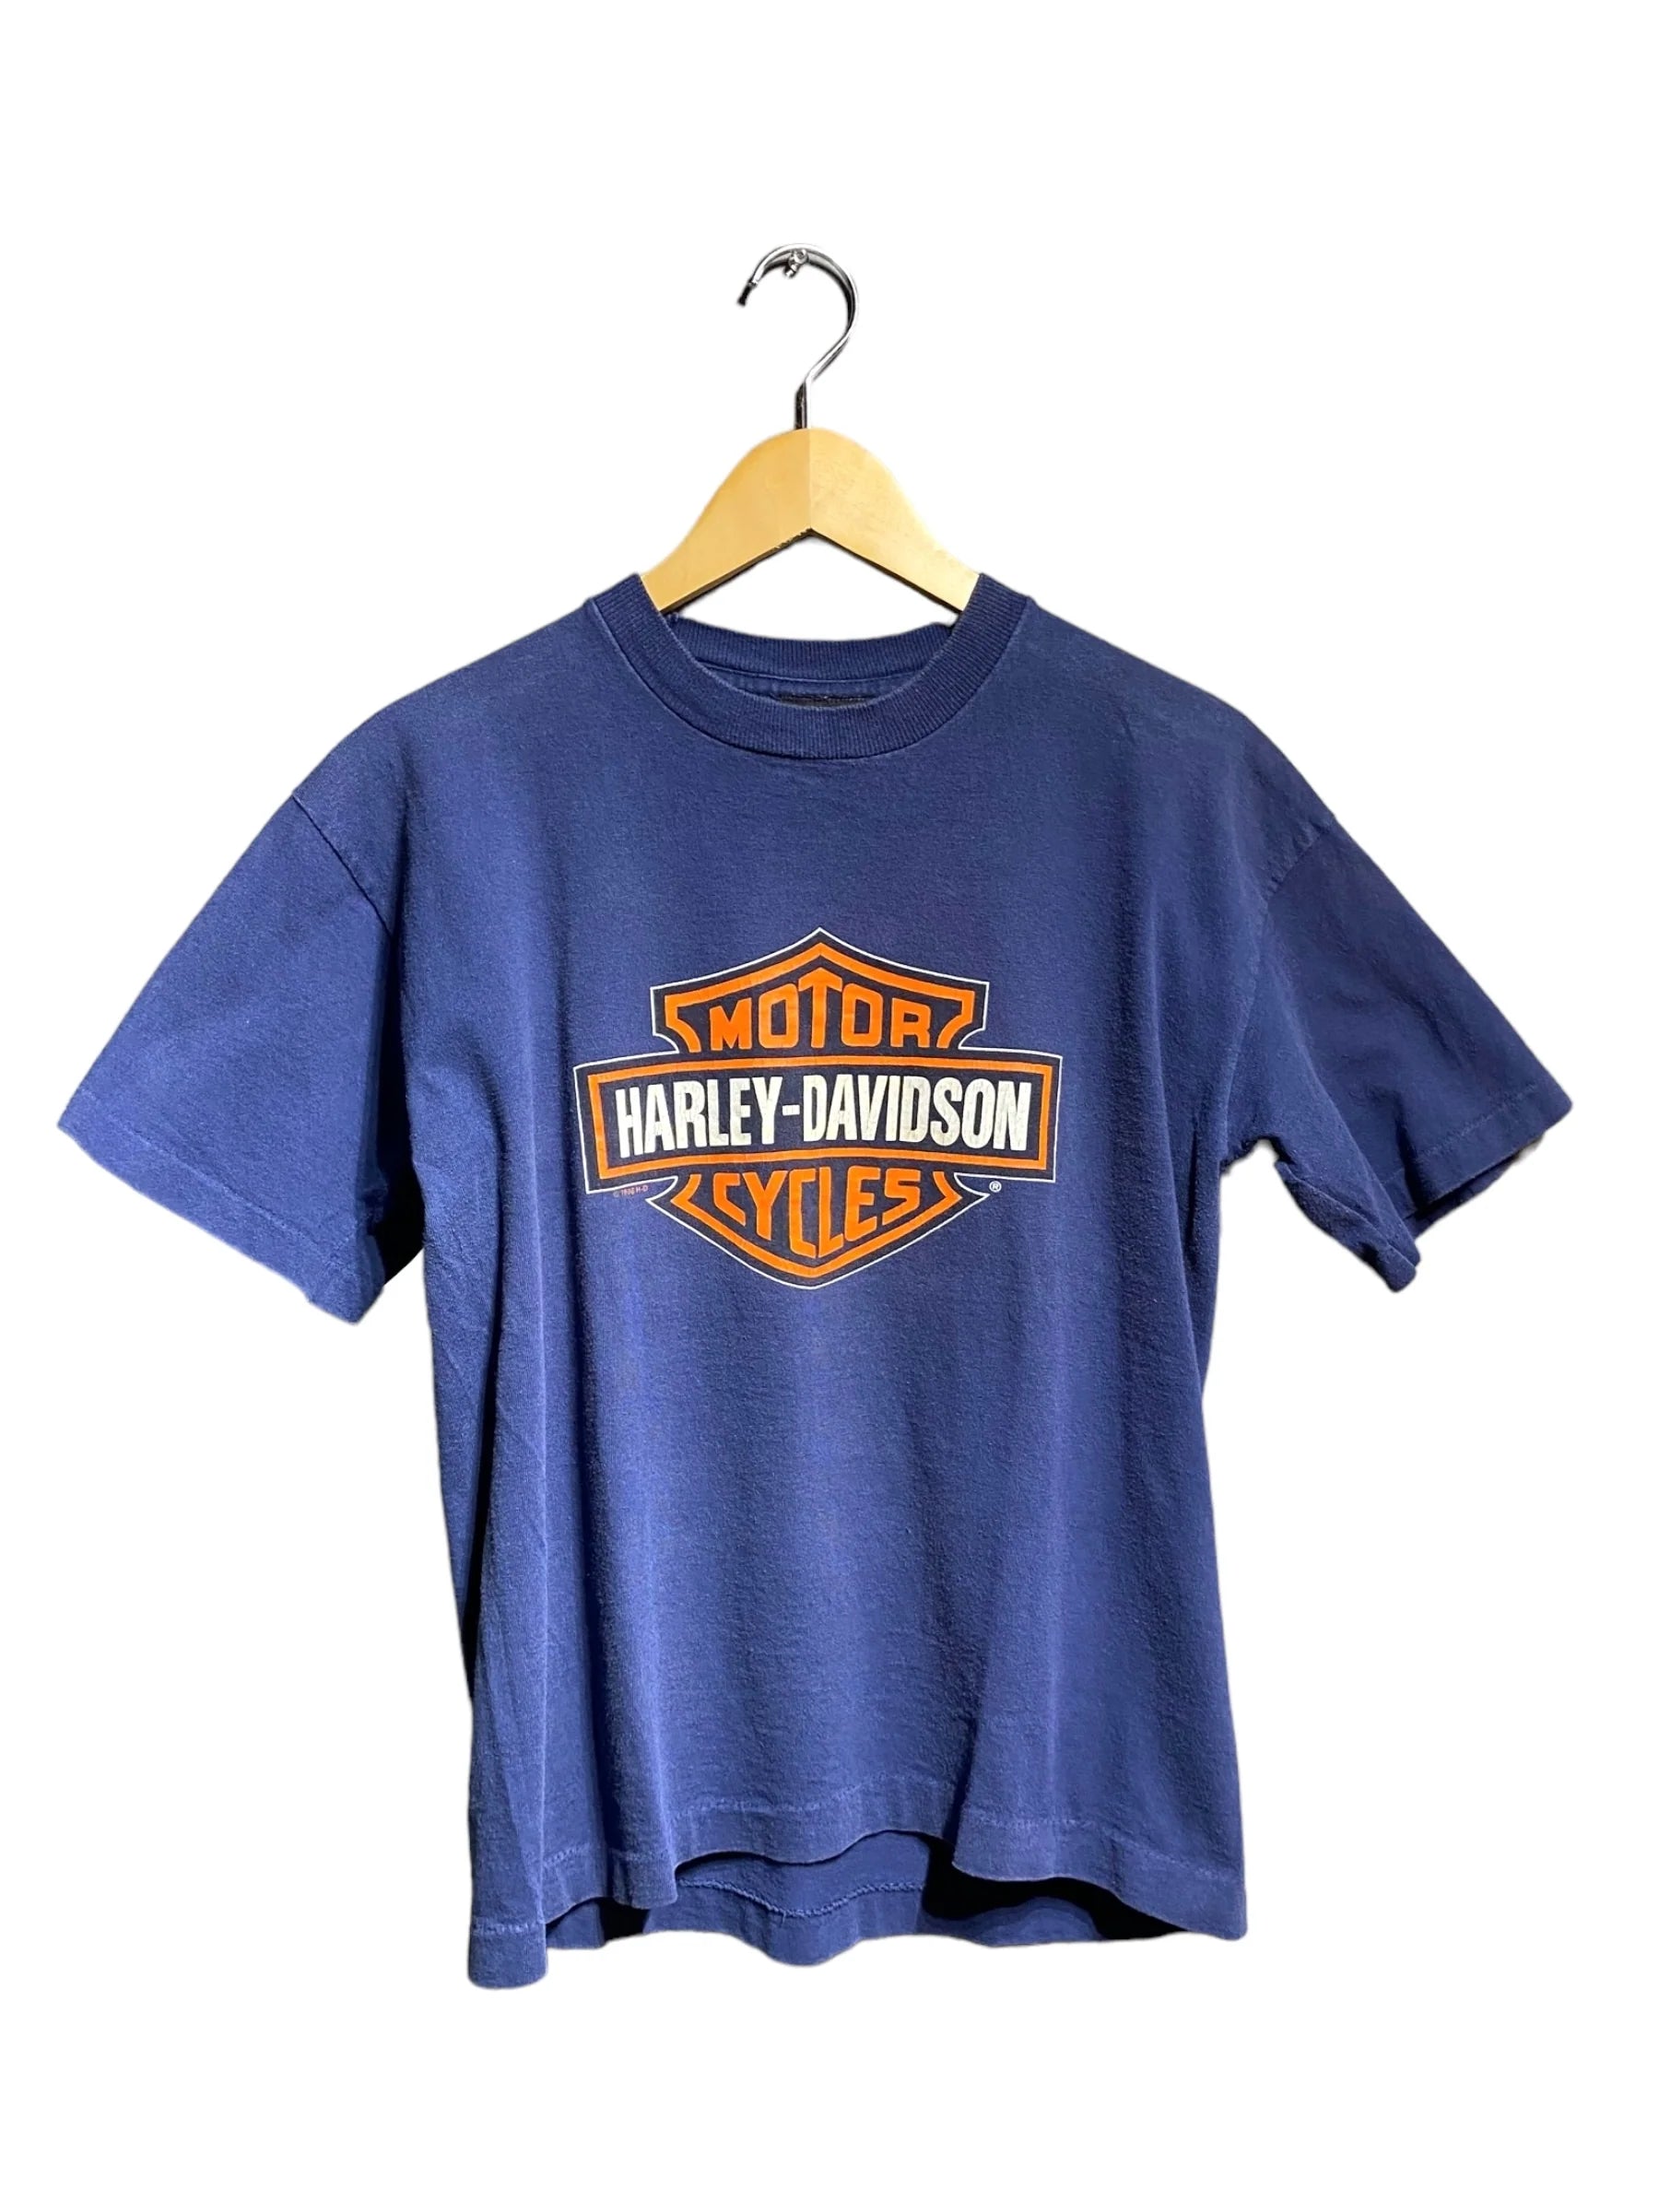 12,180円ハーレーダビッドソン Harley Davidson 半袖tシャツ